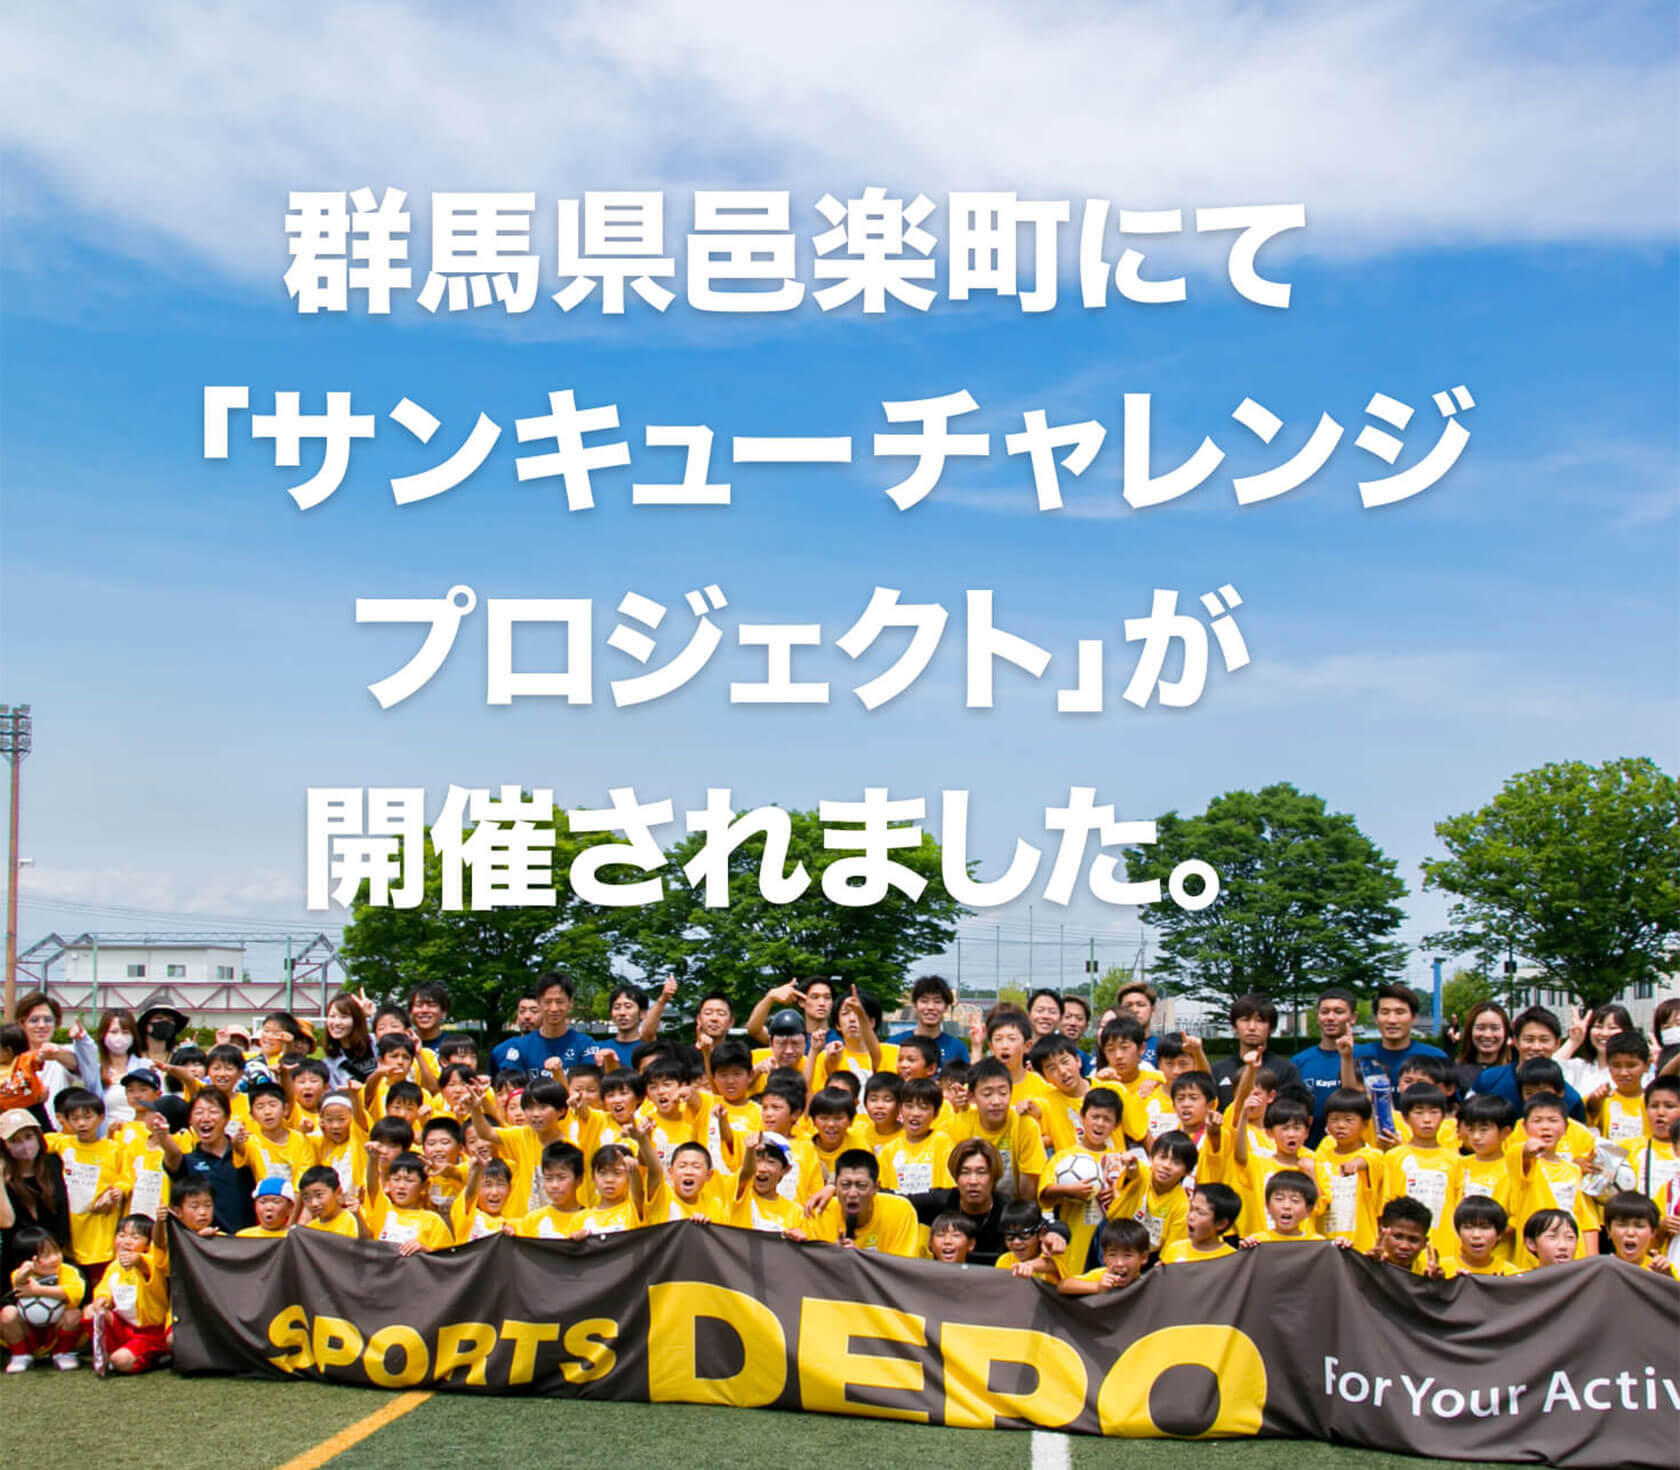 群馬県邑楽町にて「サンキューチャレンジプロジェクト」が開催されました。